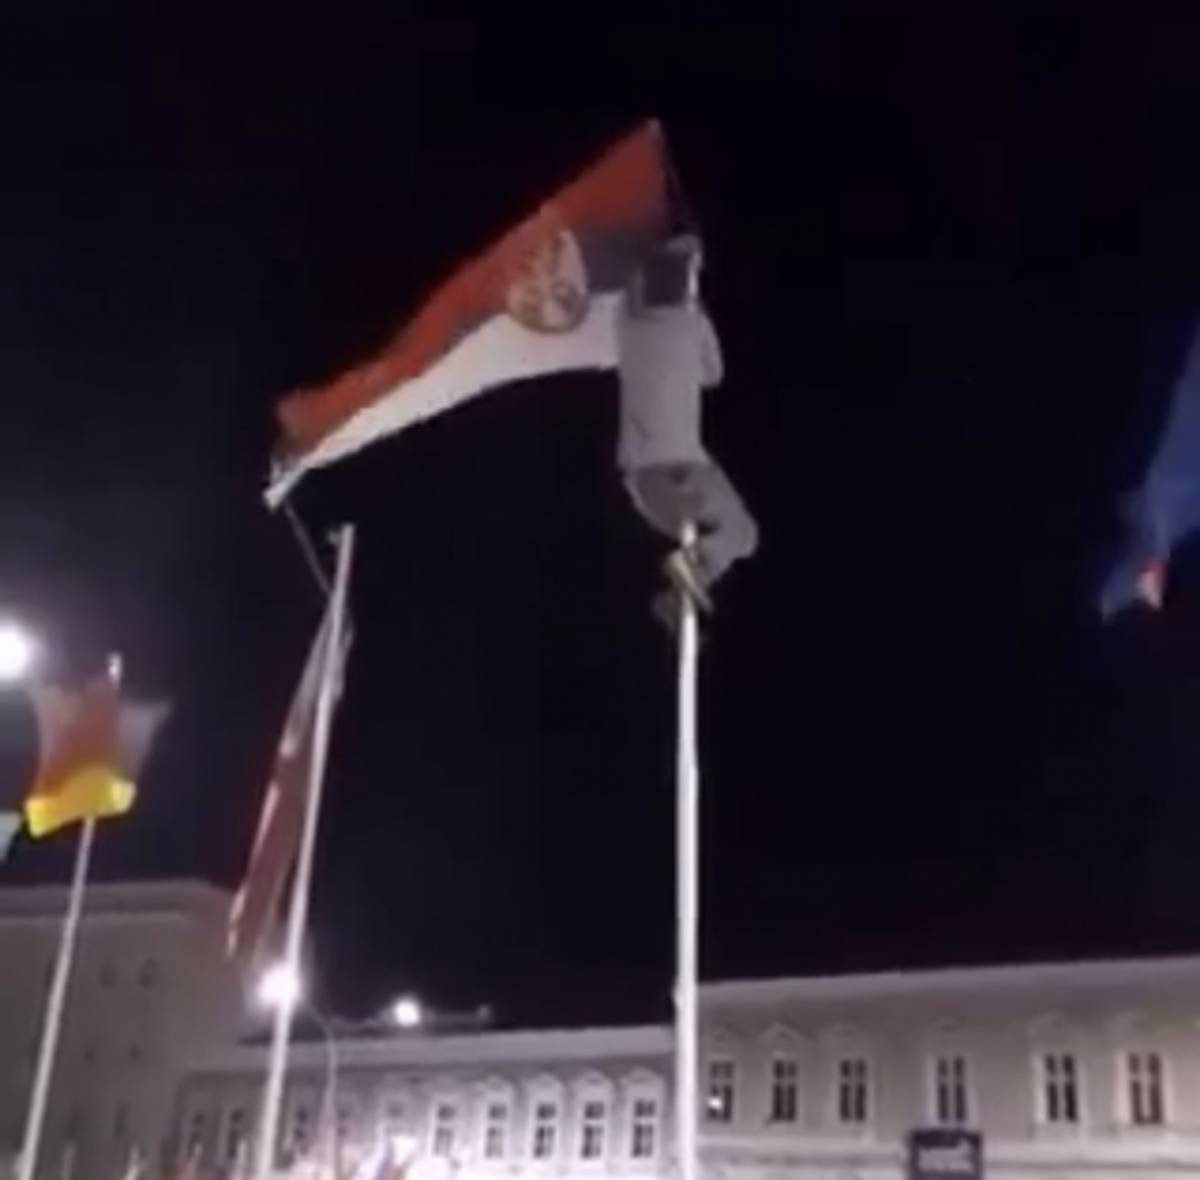 SB Online | Zbog skidanja zastave Republike Srbije policija ispitala dvojicu mladića iz Pleternice